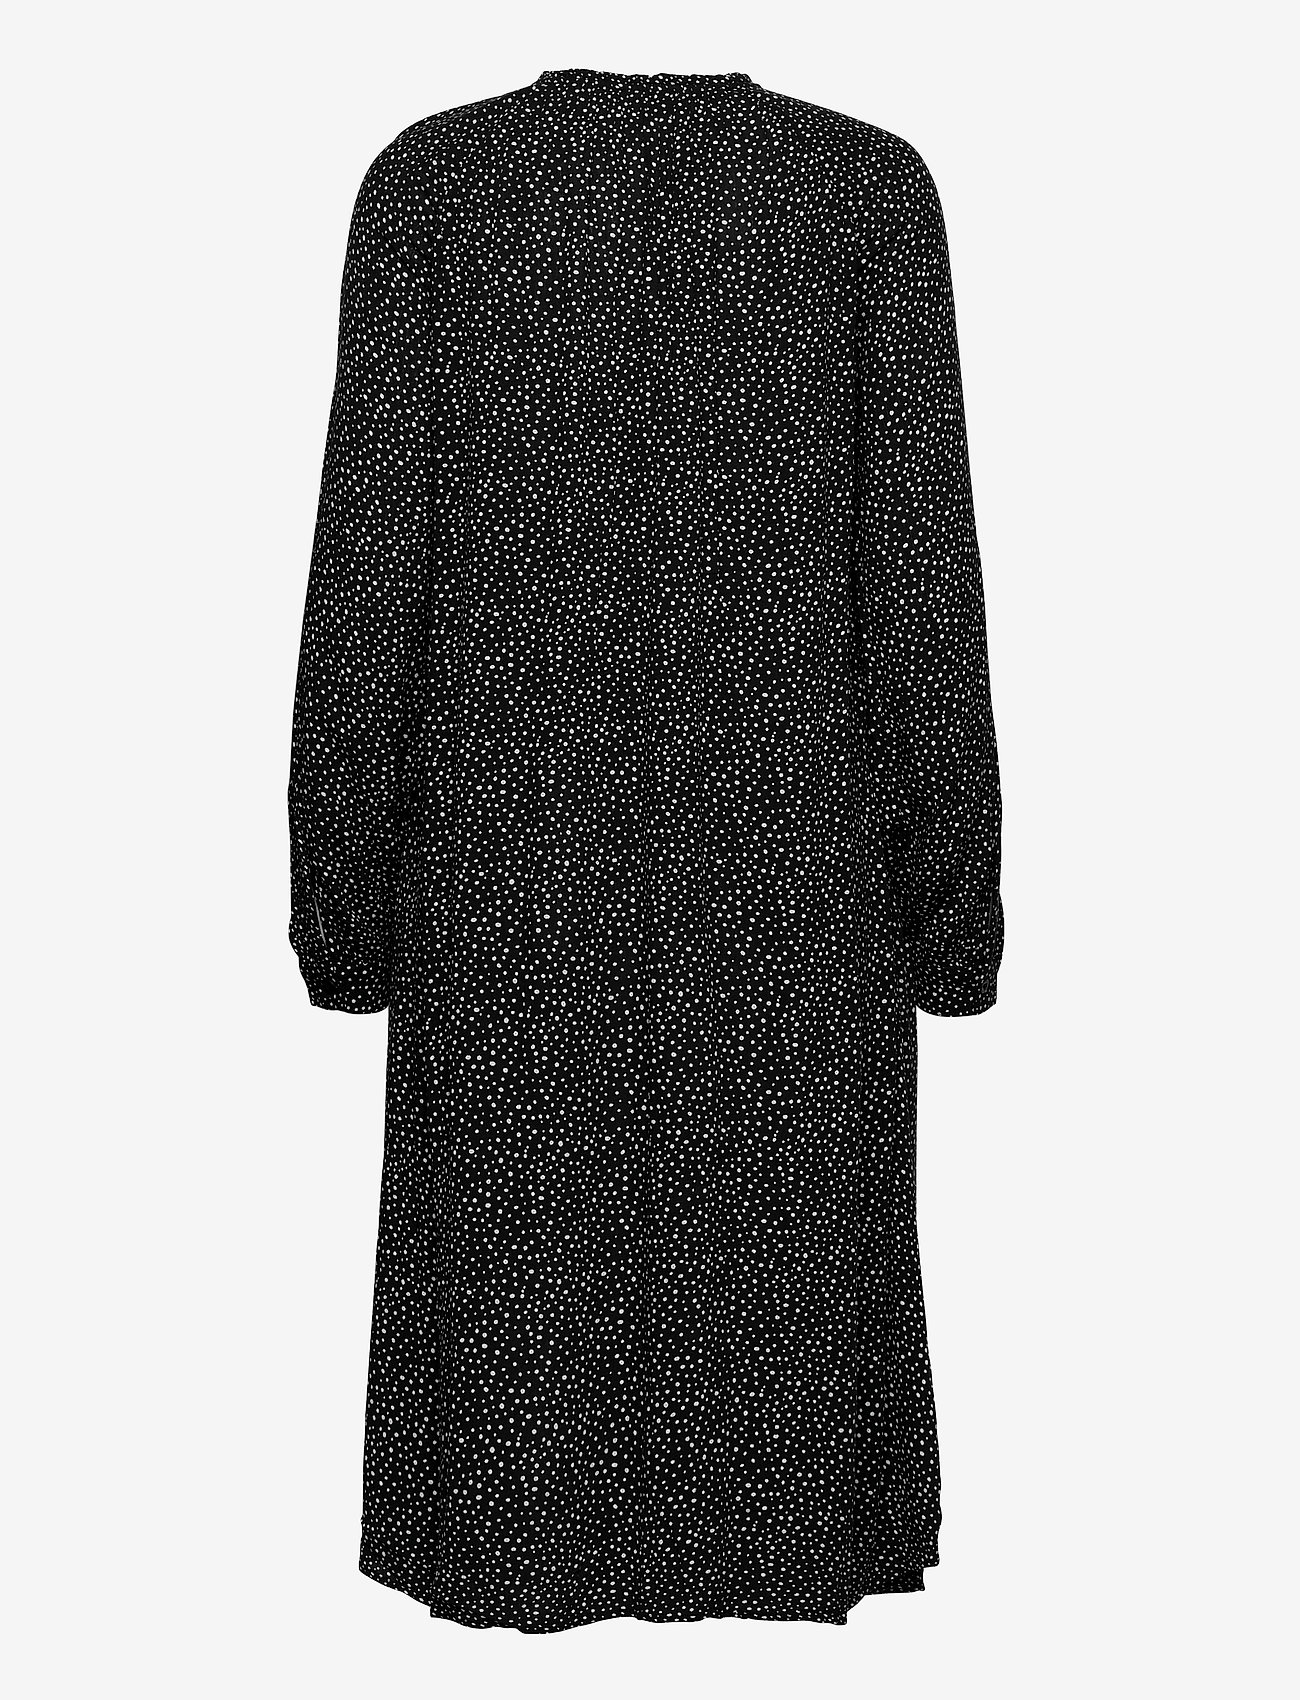 EDC by Esprit - Dresses light woven - midiklänningar - black 3 - 1